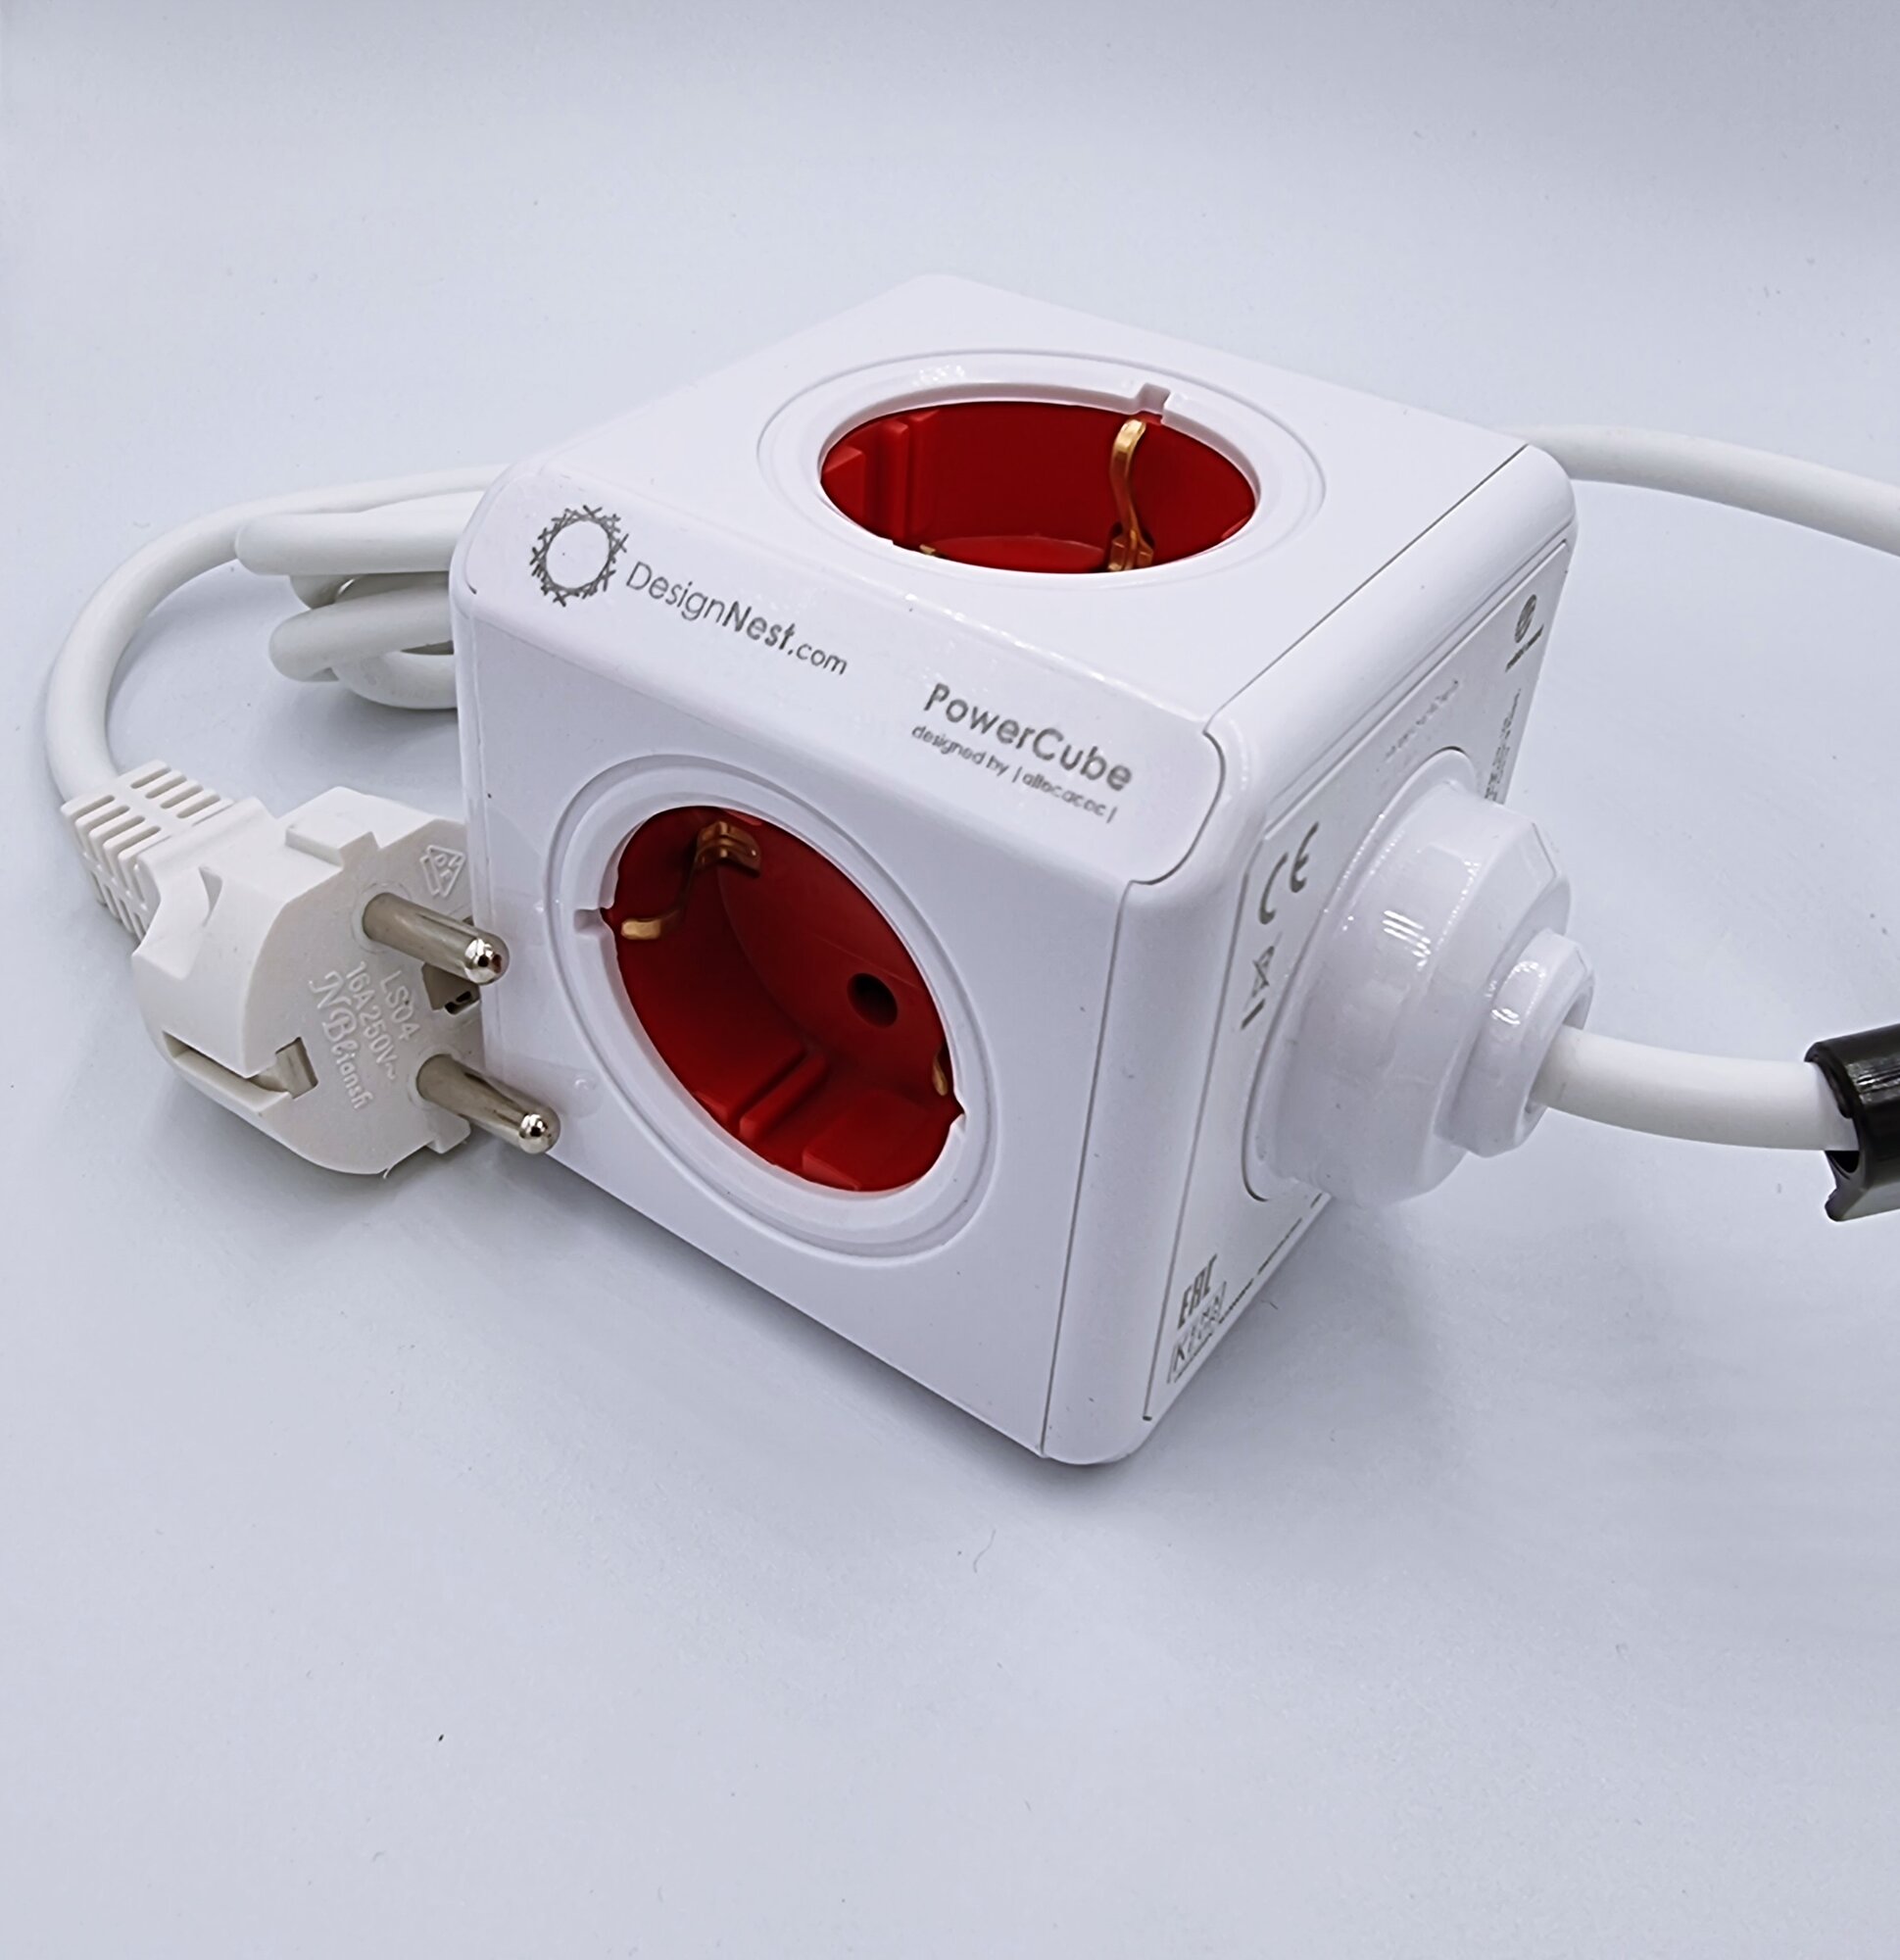 Сетевой удлинитель (фильтр) Allocacoc/DesignNest PowerCube Extended USB 1402RD/DEEUPC, 4 розетки, 2 USB, провод 1,5 метра, крепление в комплекте, красный